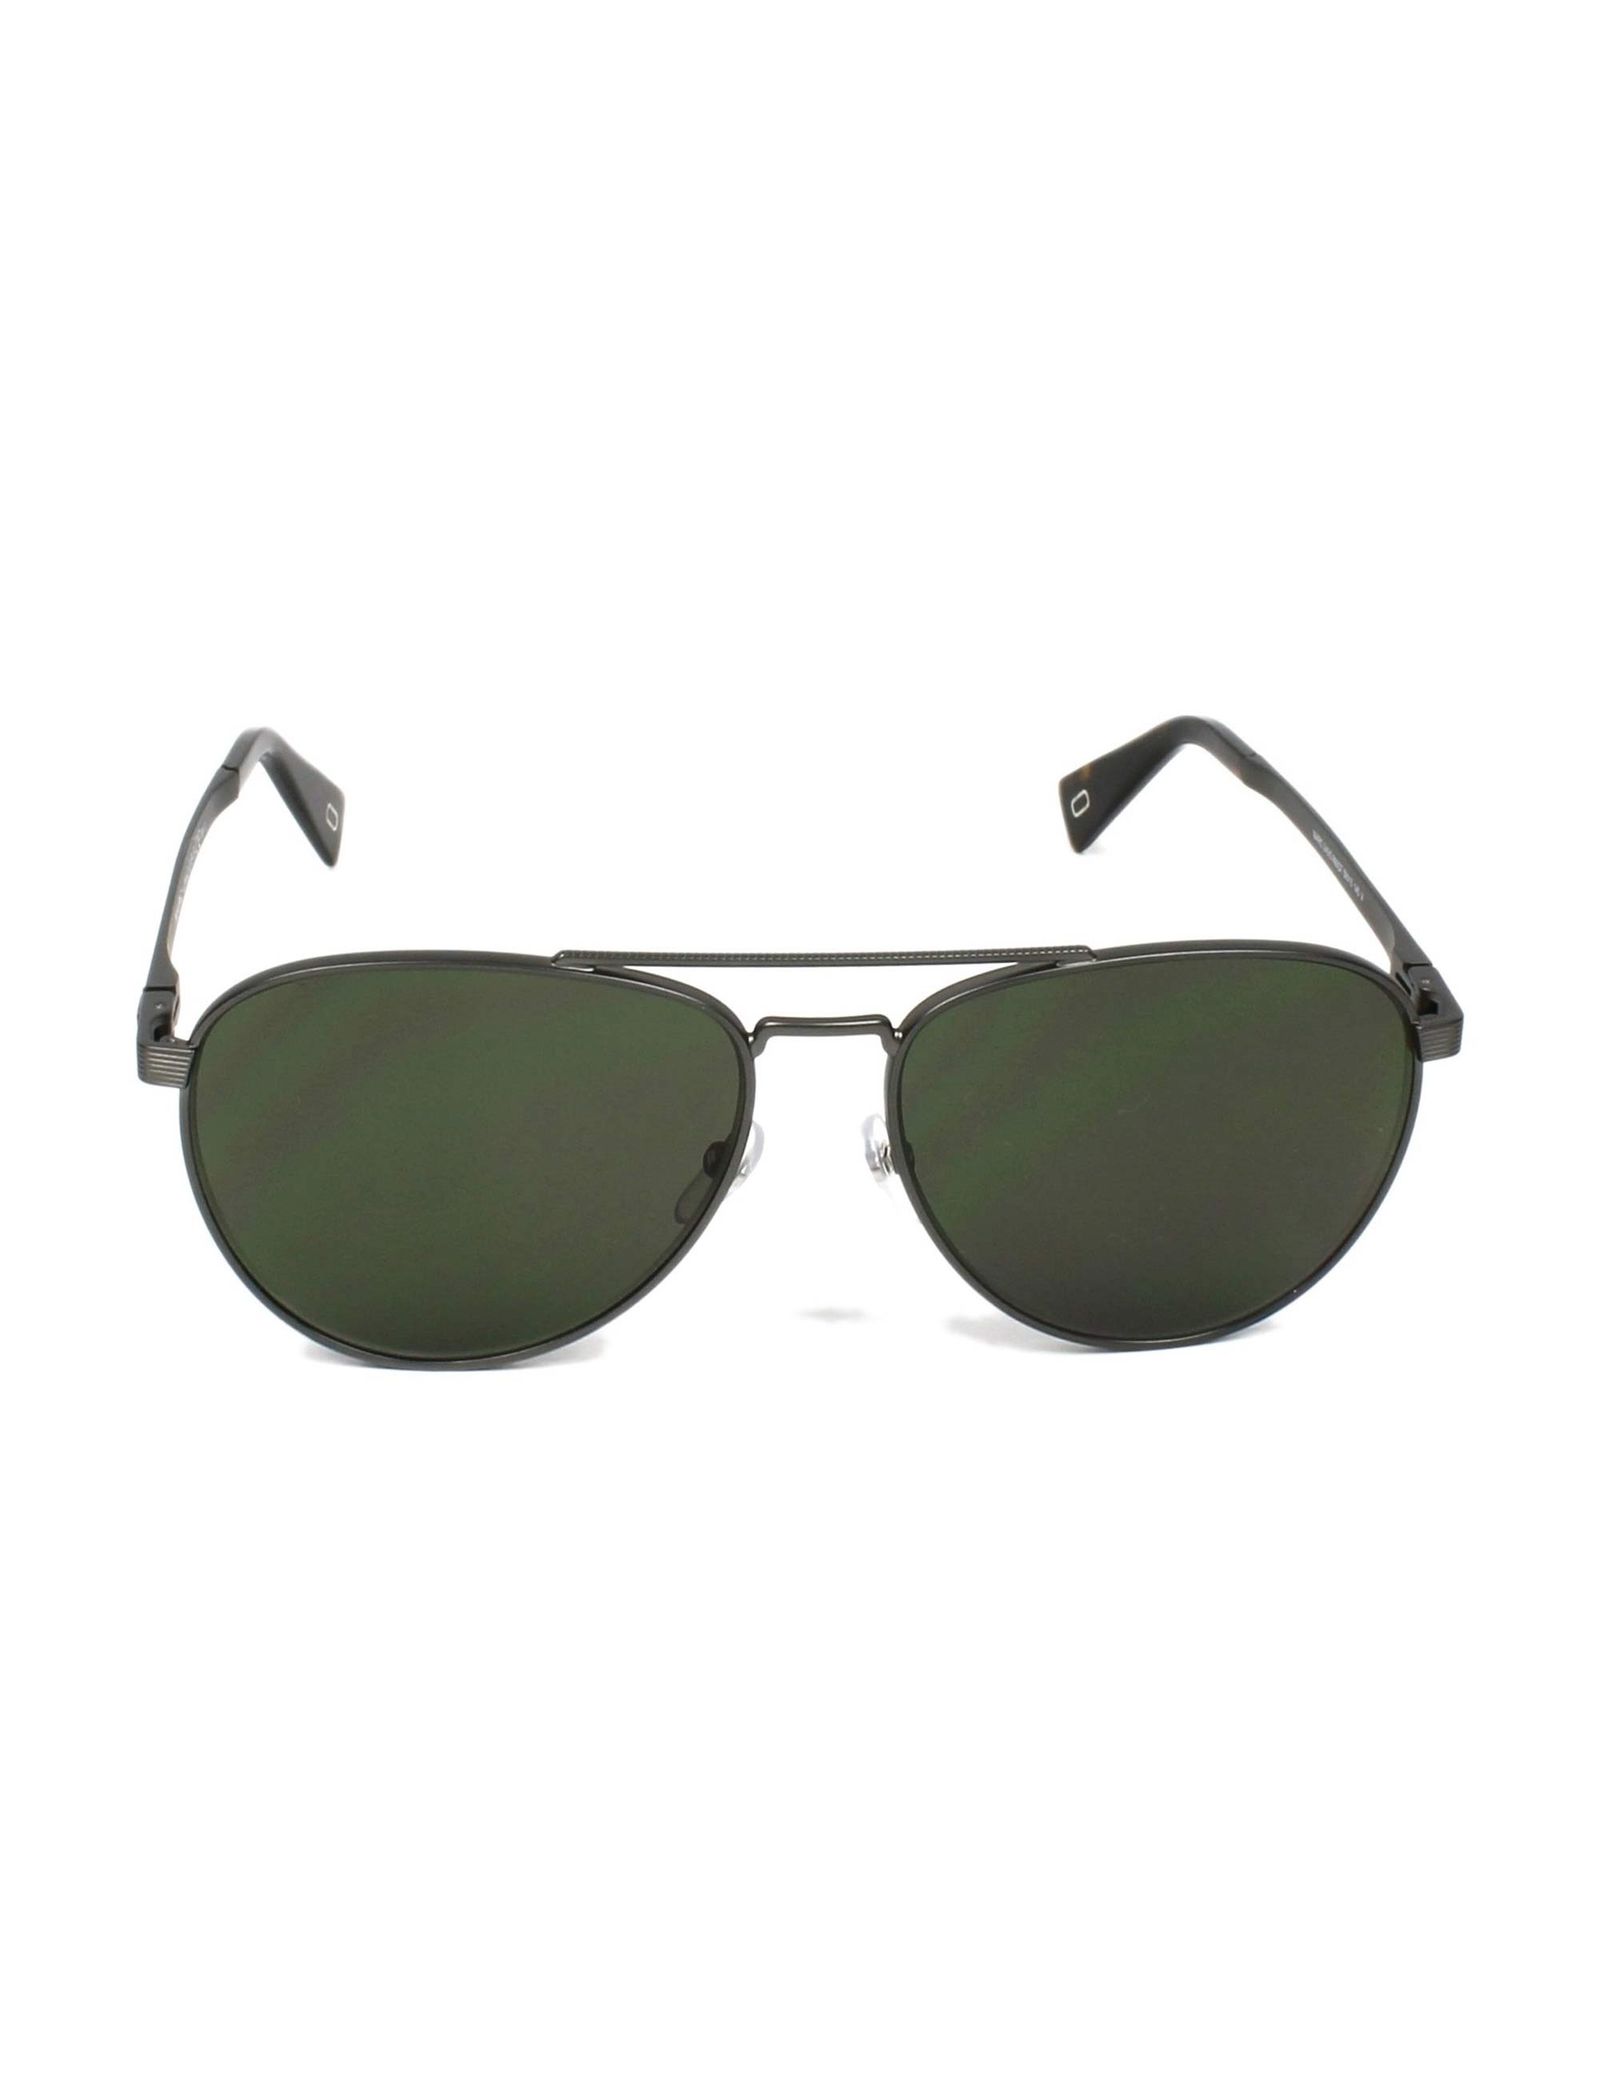 عینک آفتابی خلبانی مردانه - مارک جکوبس - نقره اي - 2